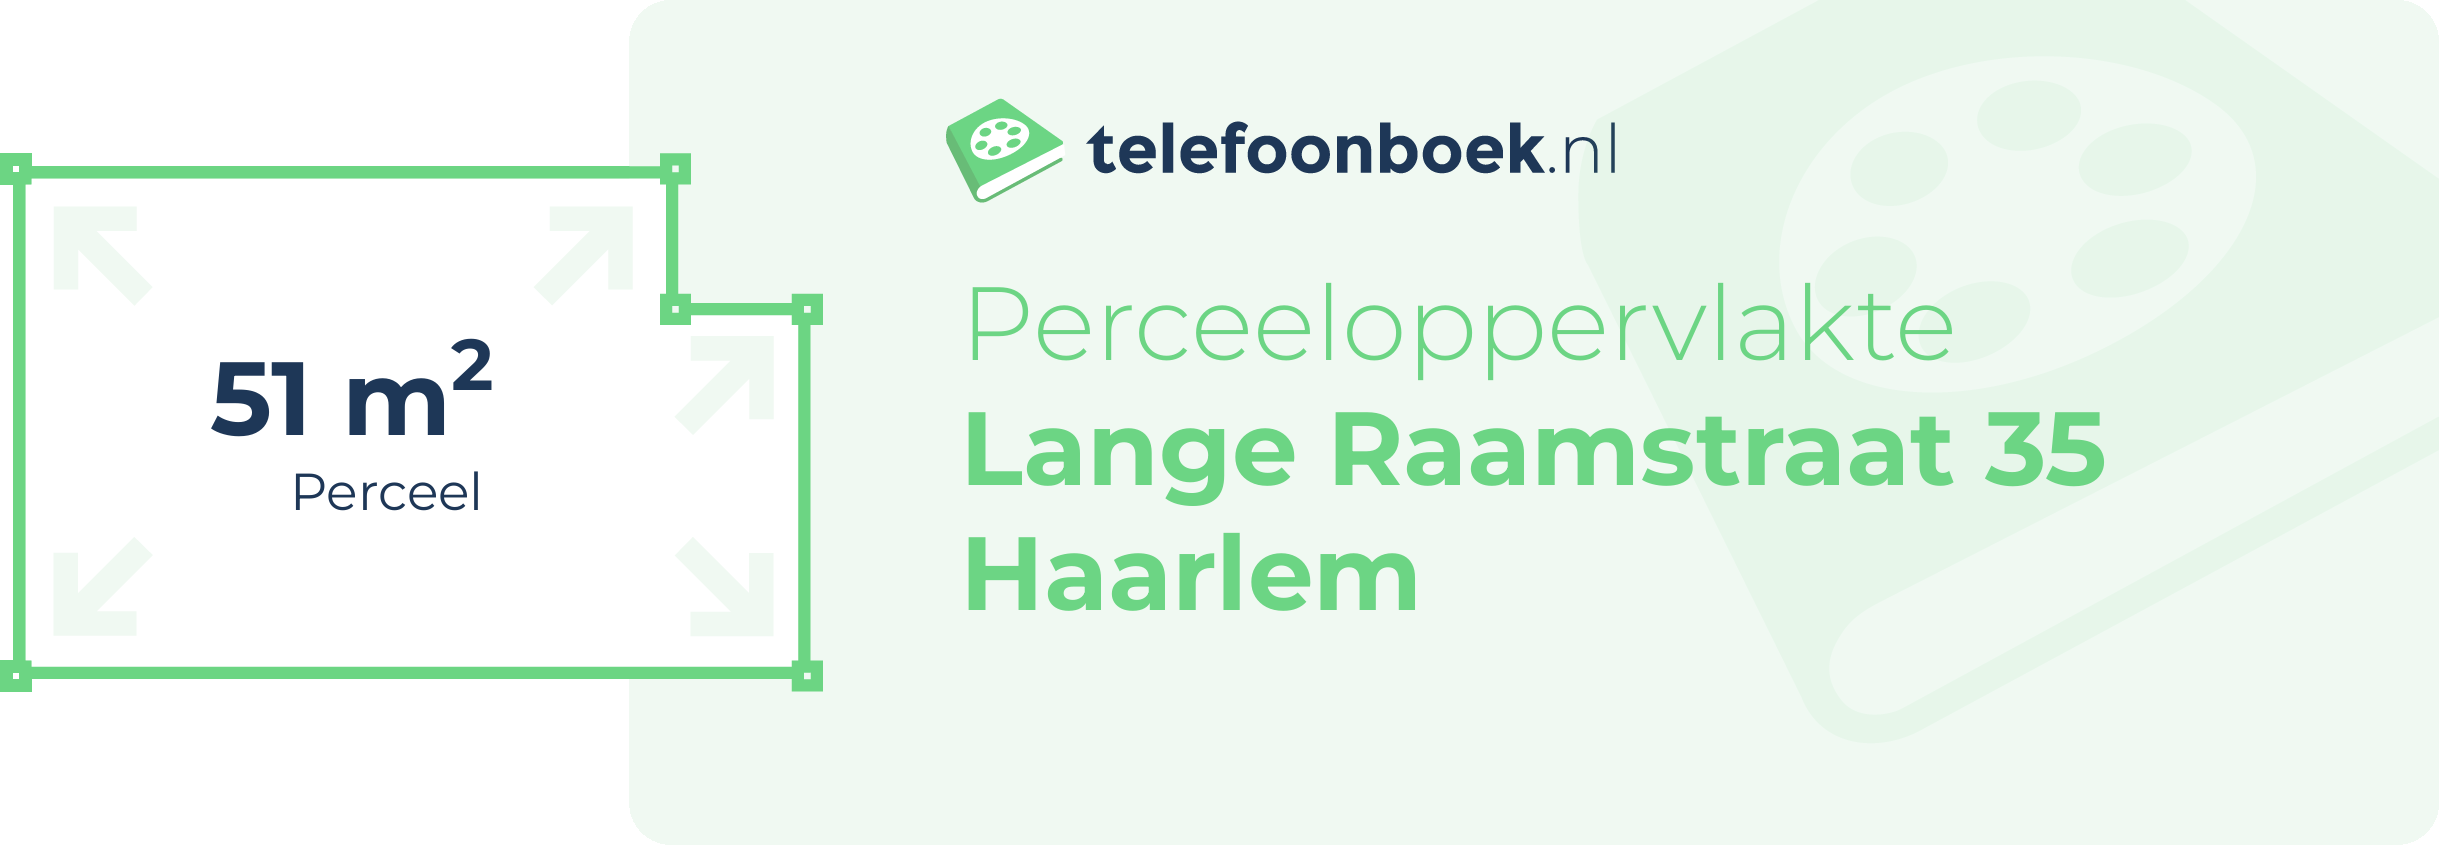 Perceeloppervlakte Lange Raamstraat 35 Haarlem